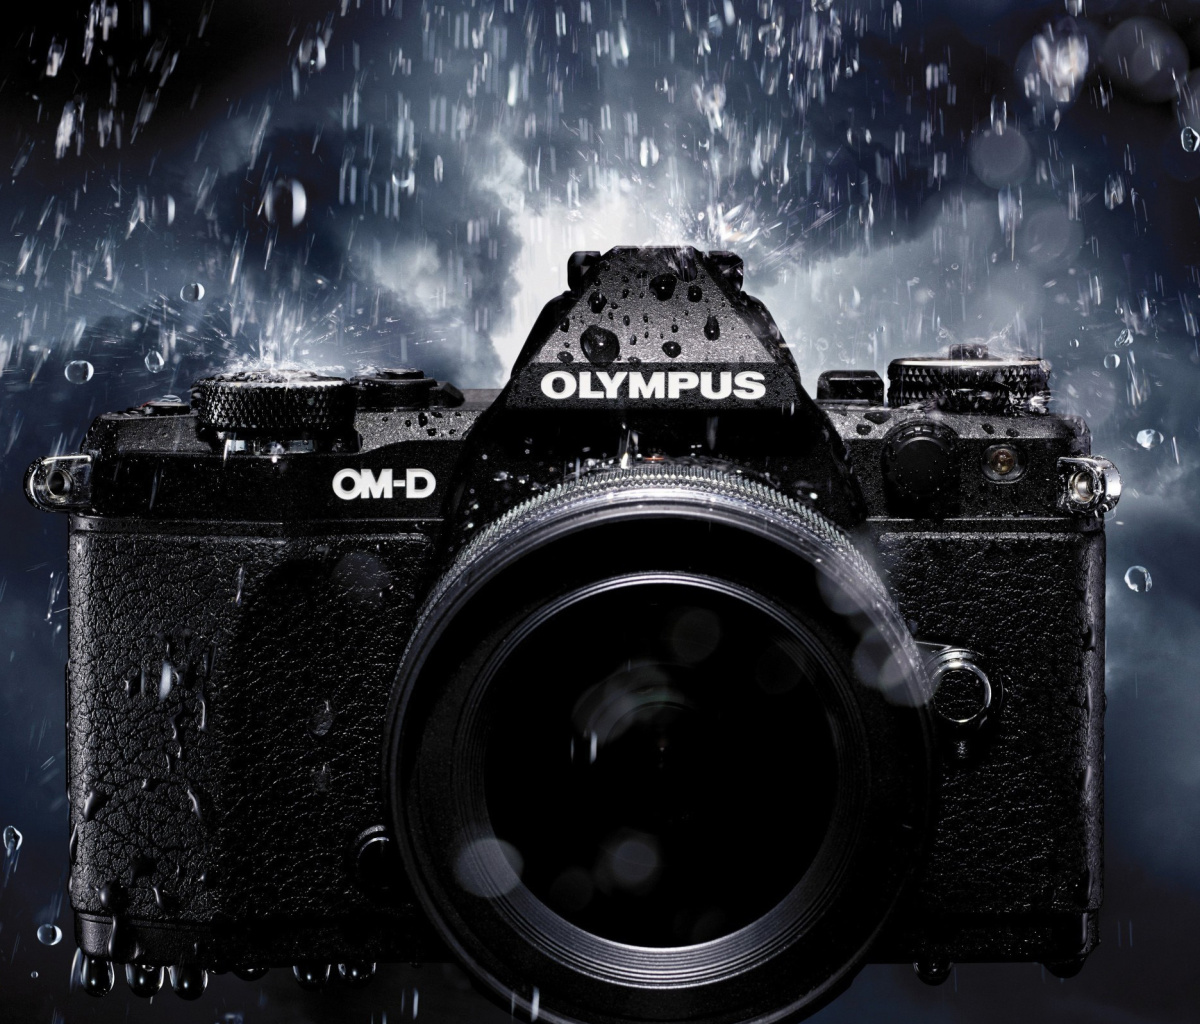 Fondo de pantalla Olympus Om D 1200x1024